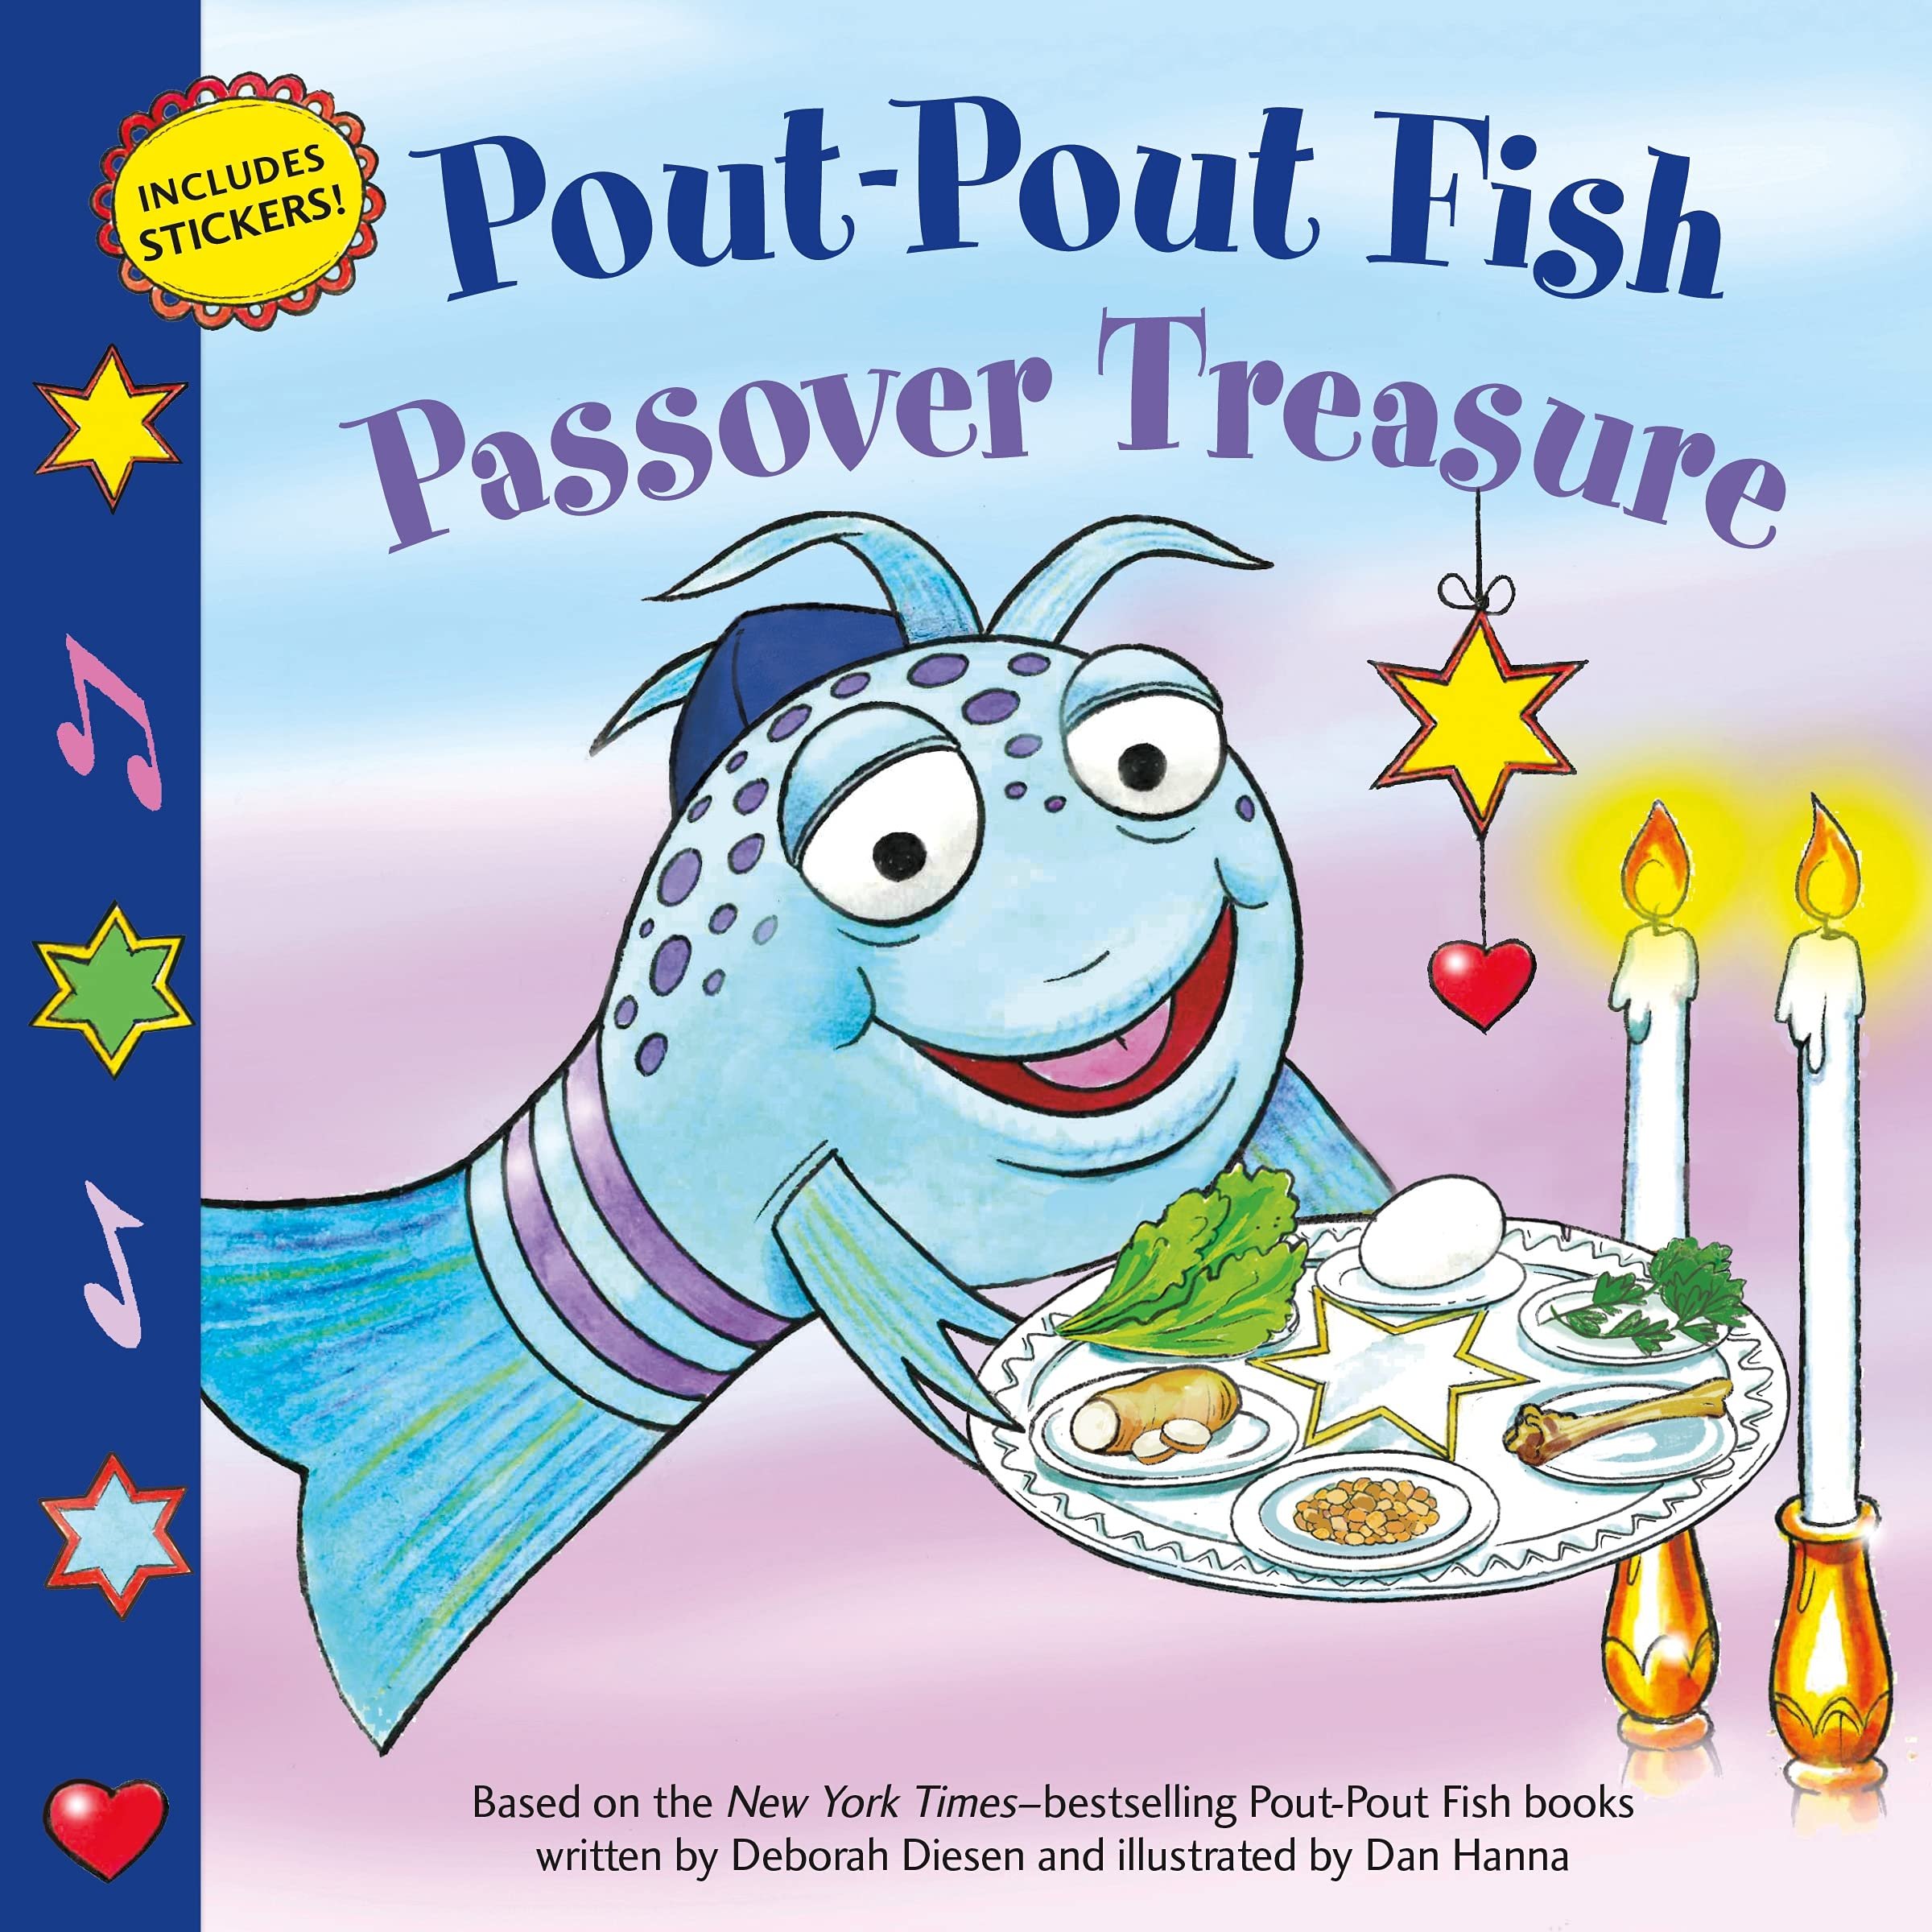 Audiobook_Deborah Diesen_Pout-Pout Fish, Passover Treasure.jpeg